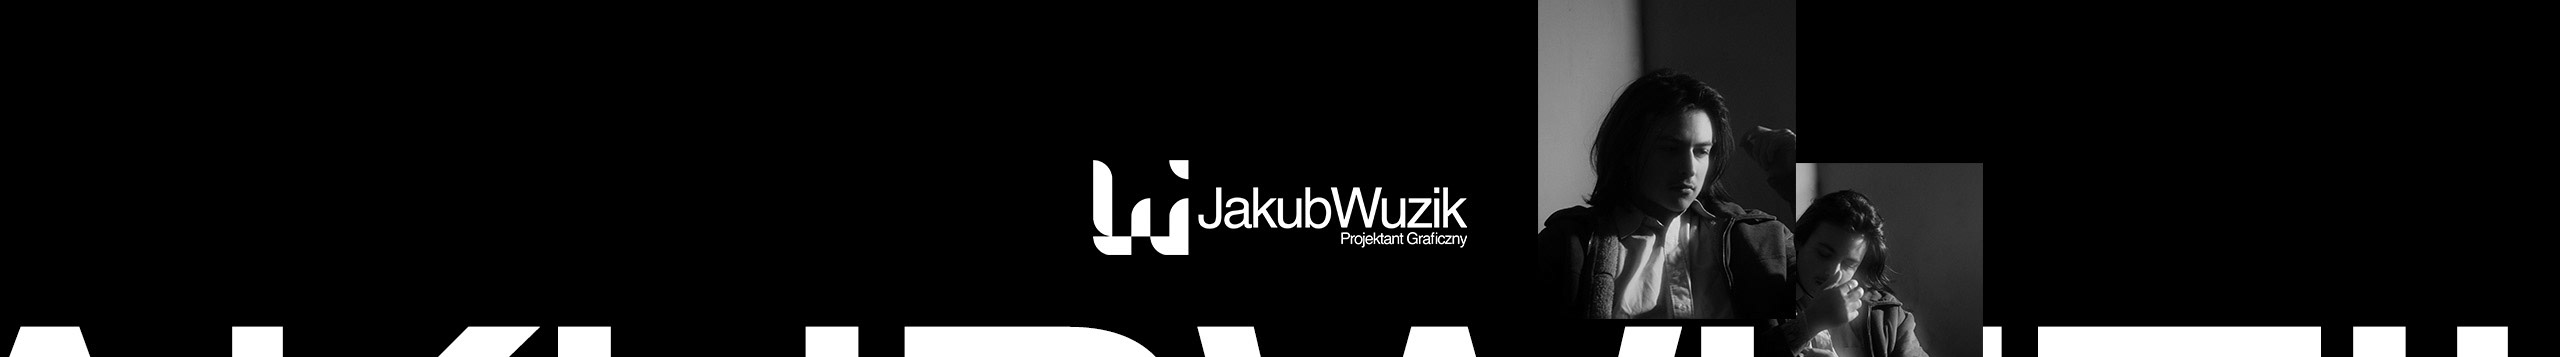 Jakub Wuzik's profile banner